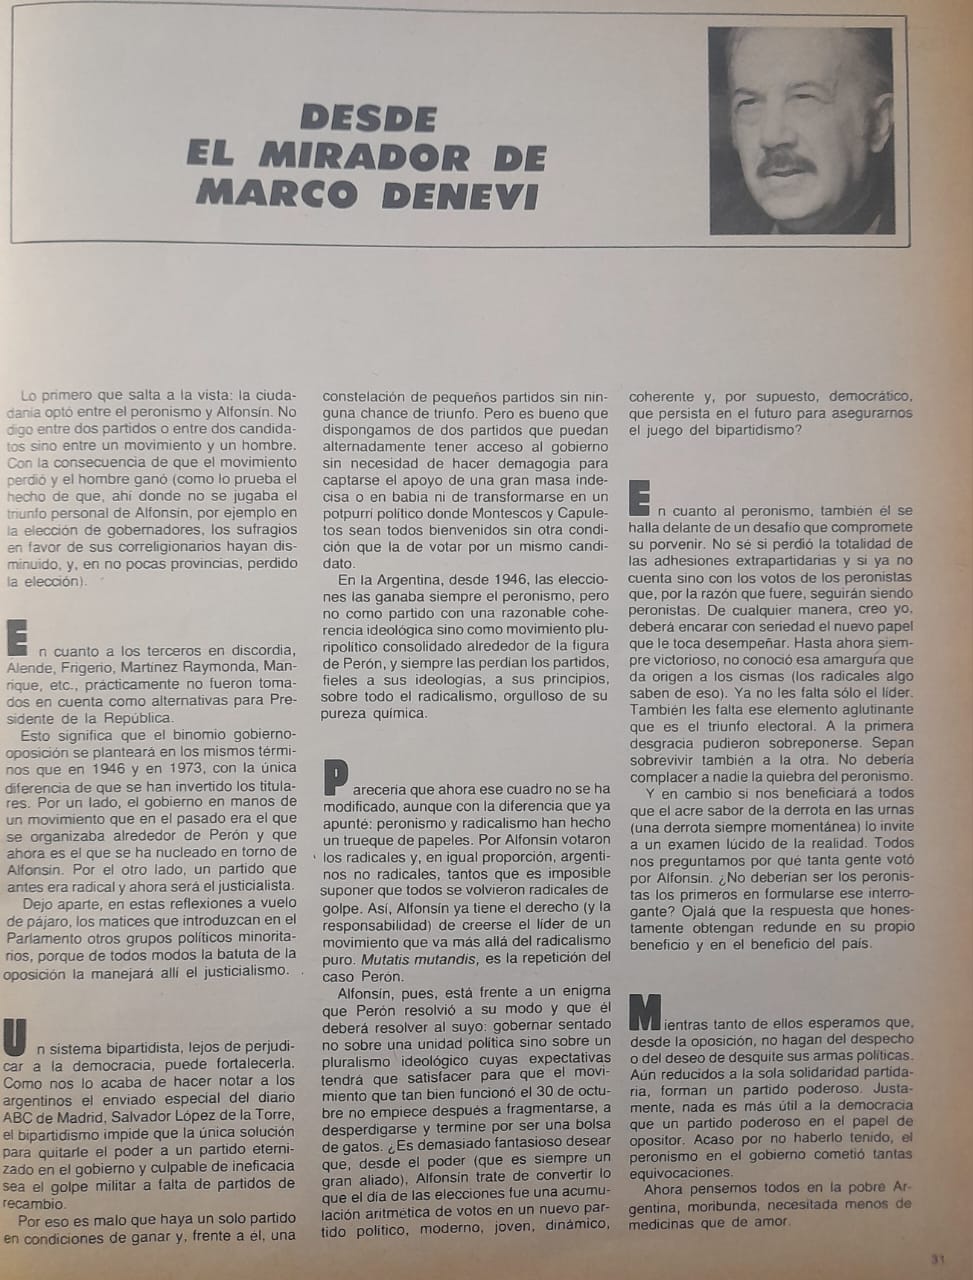 revista-gente-elecciones-1983-analisis-periodistas-3-553x728